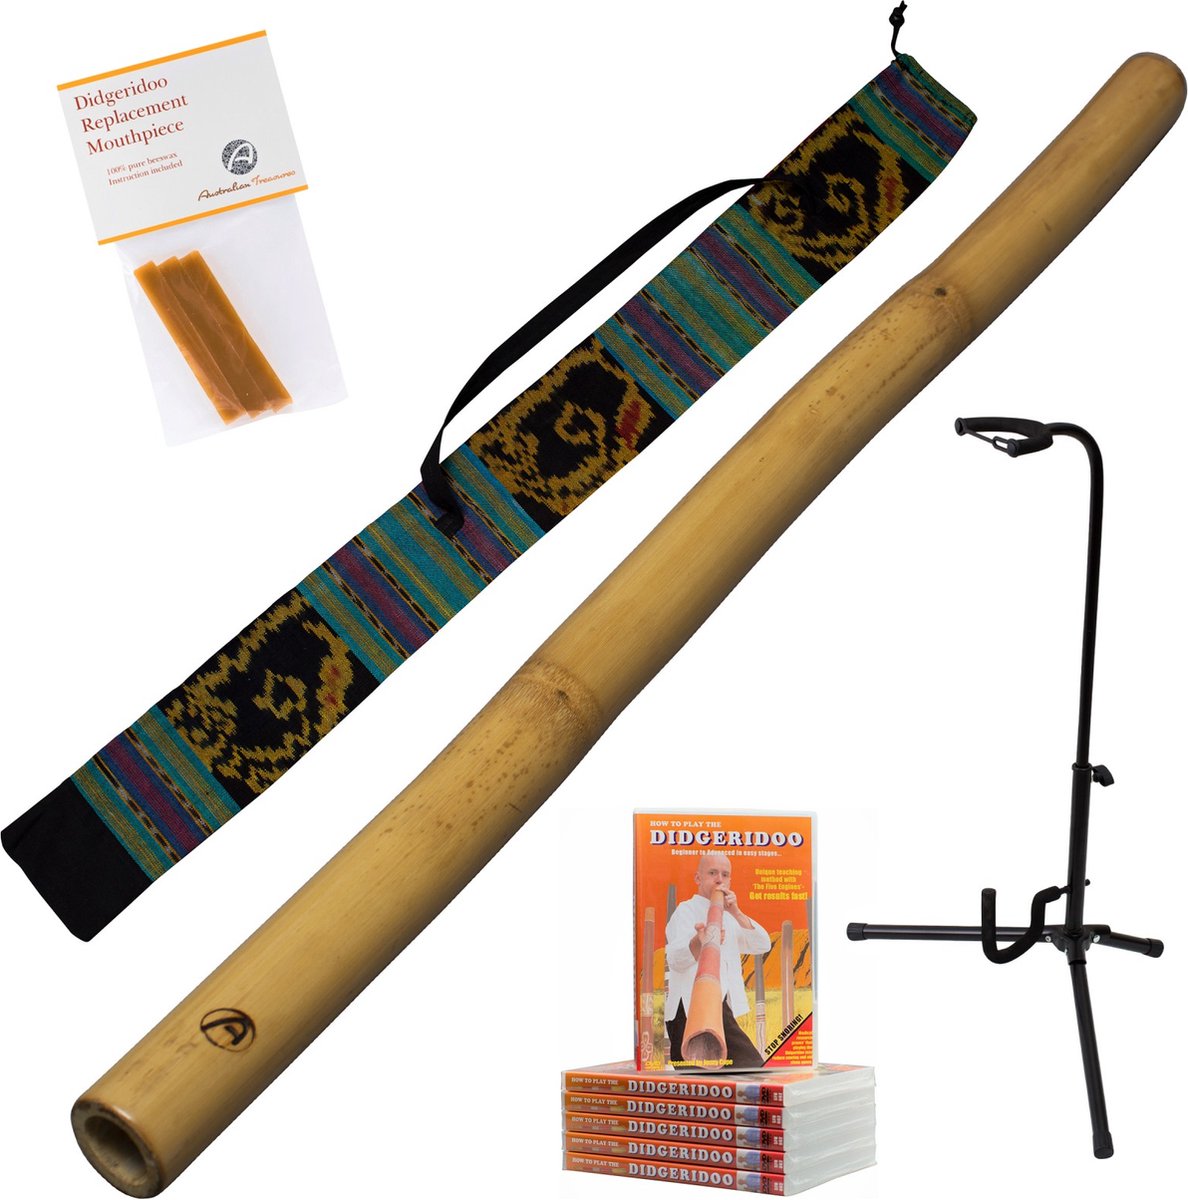 Didgeridoopakket 5-delig: didgeridoo 120cm inclusief bag - instructie DVD - bijenwas - didgeridoostandaard